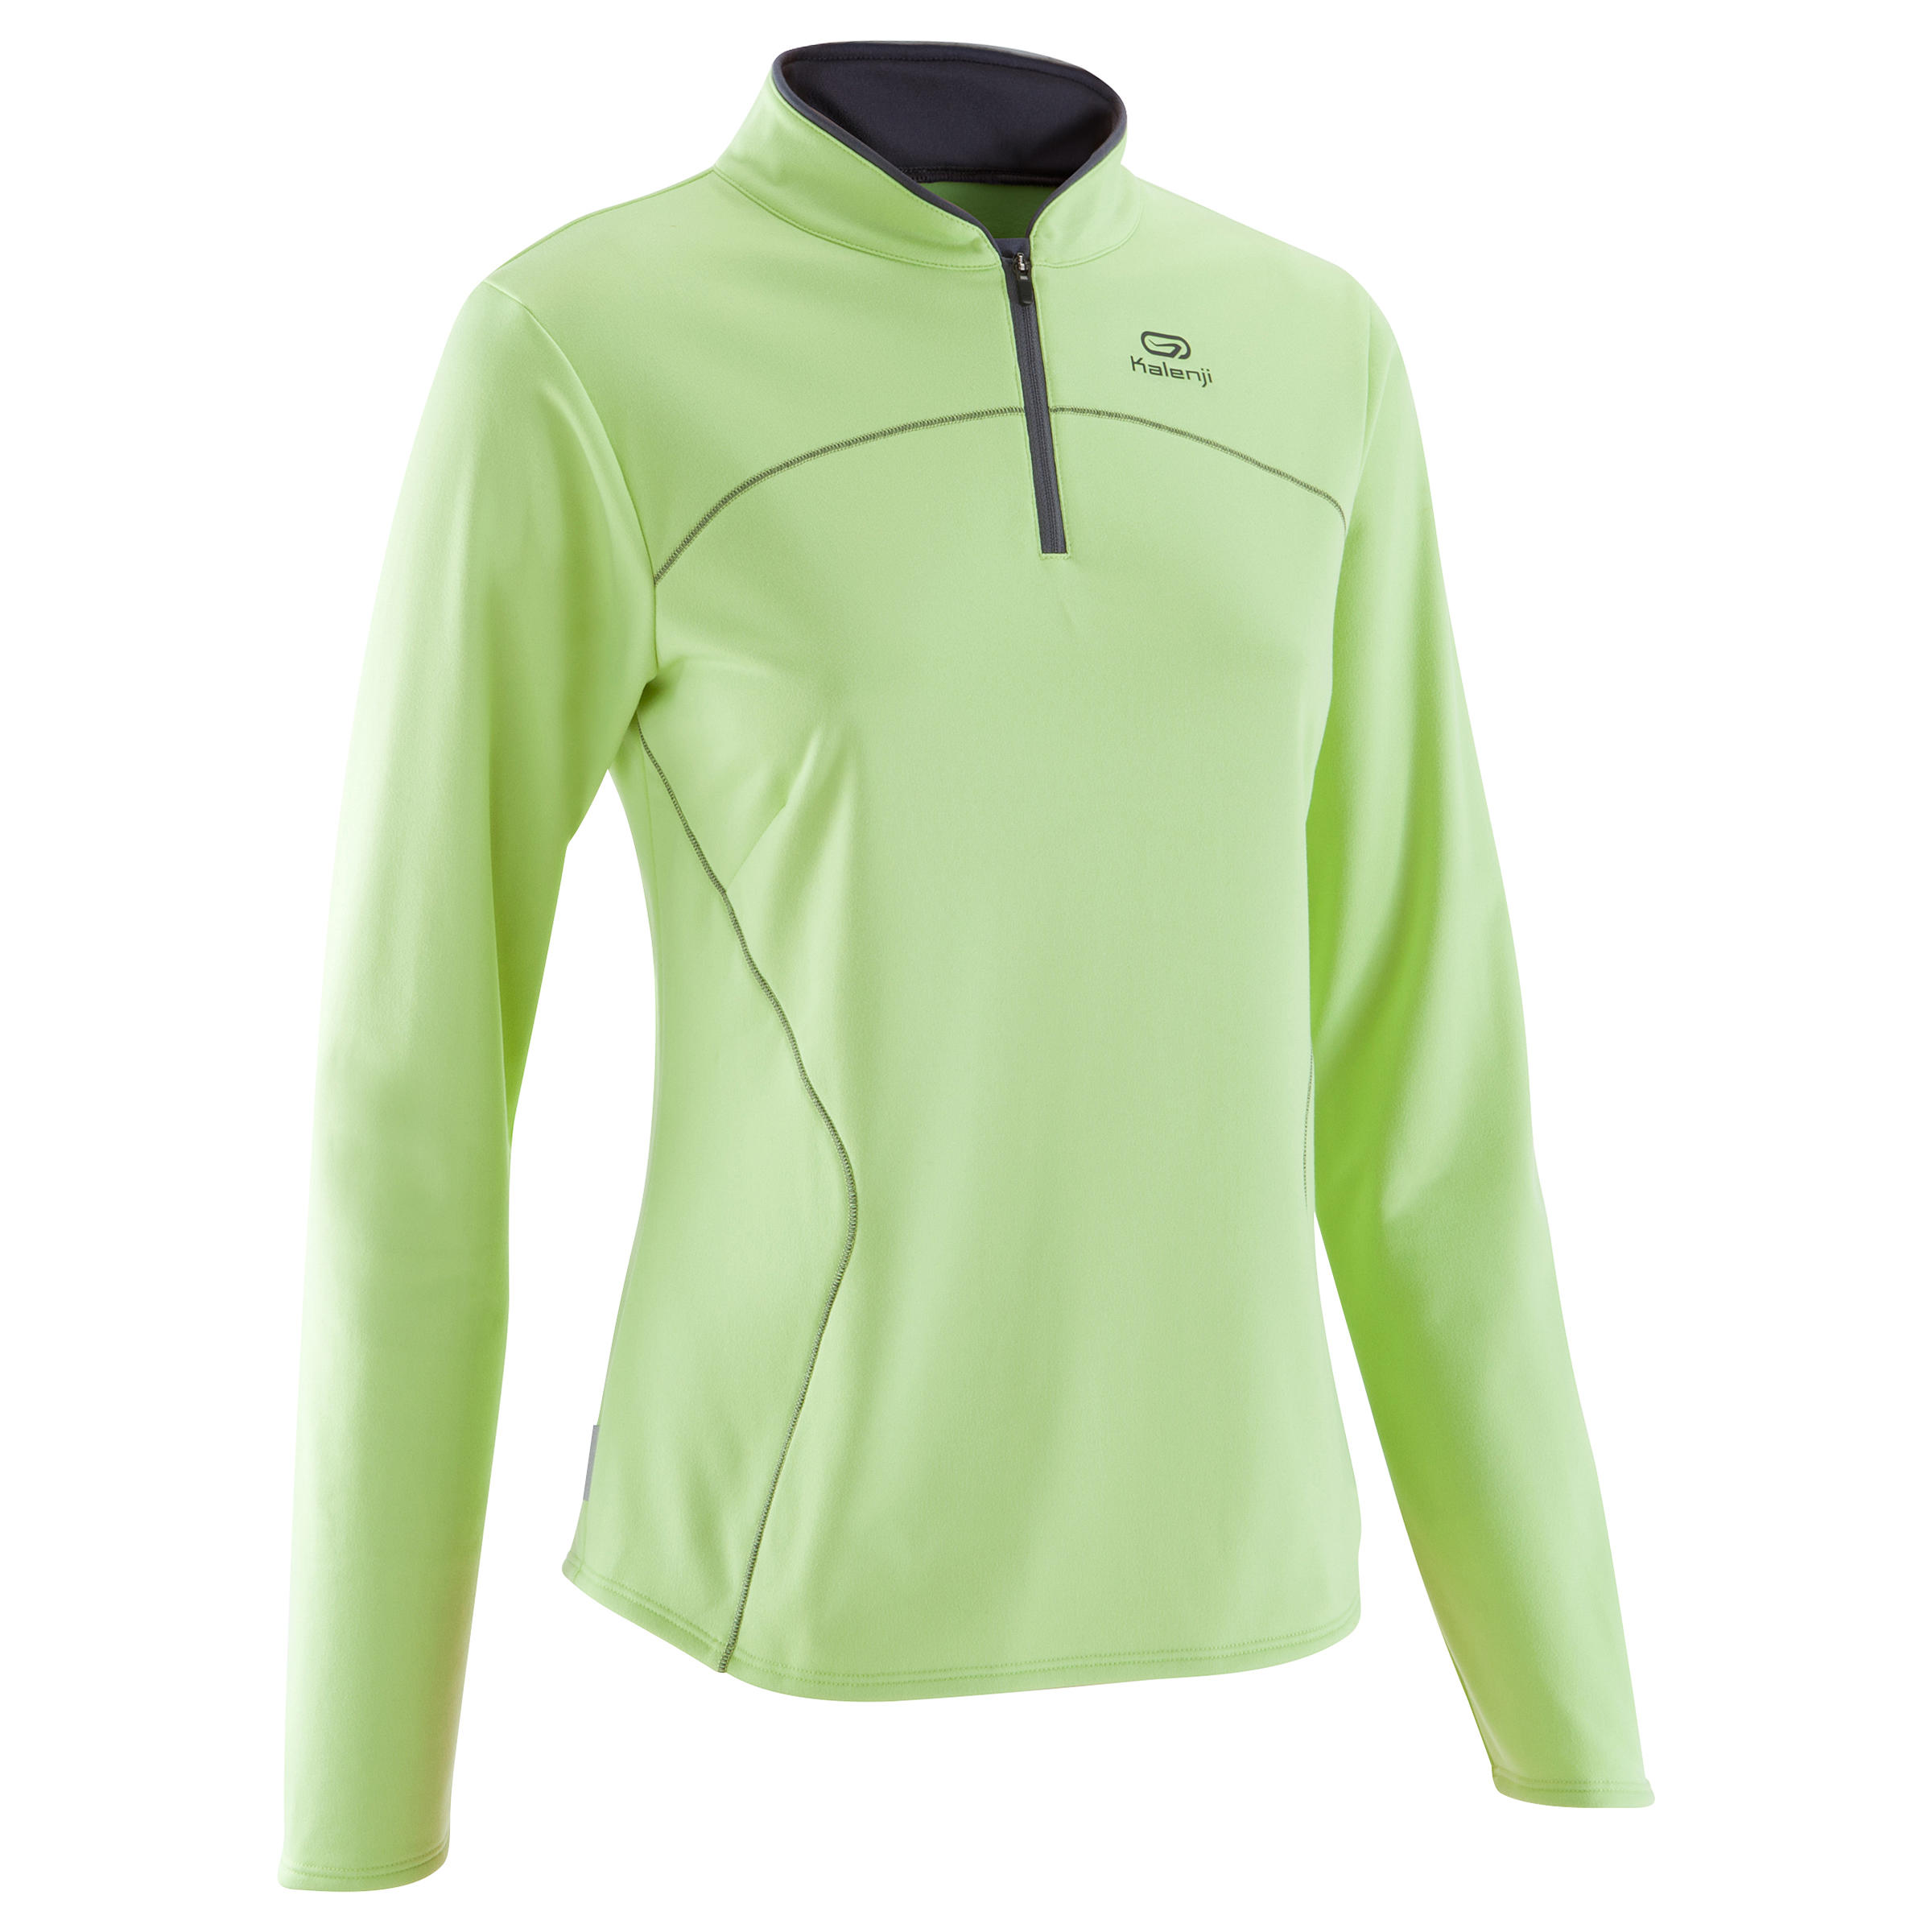 Ekiden Women's Warm Long Sleeved Running Jersey - Green 1/11